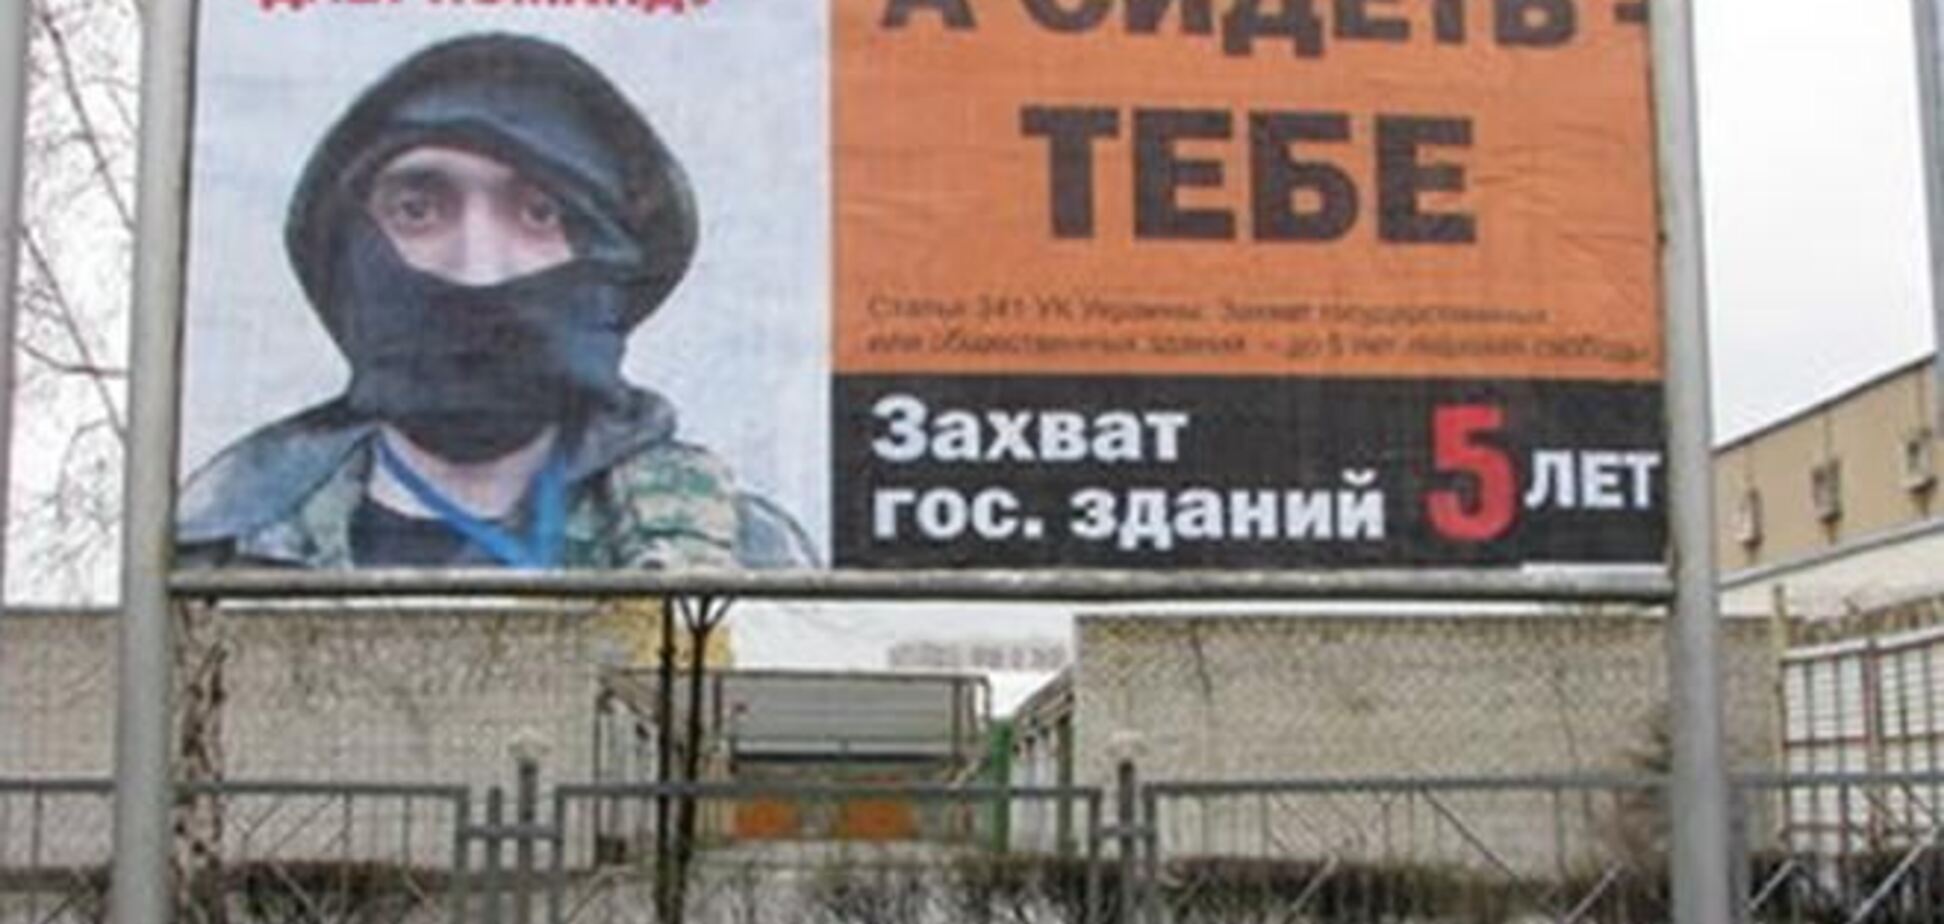 Беглый антимайдановец Топаз стал героем билбордов в Харькове